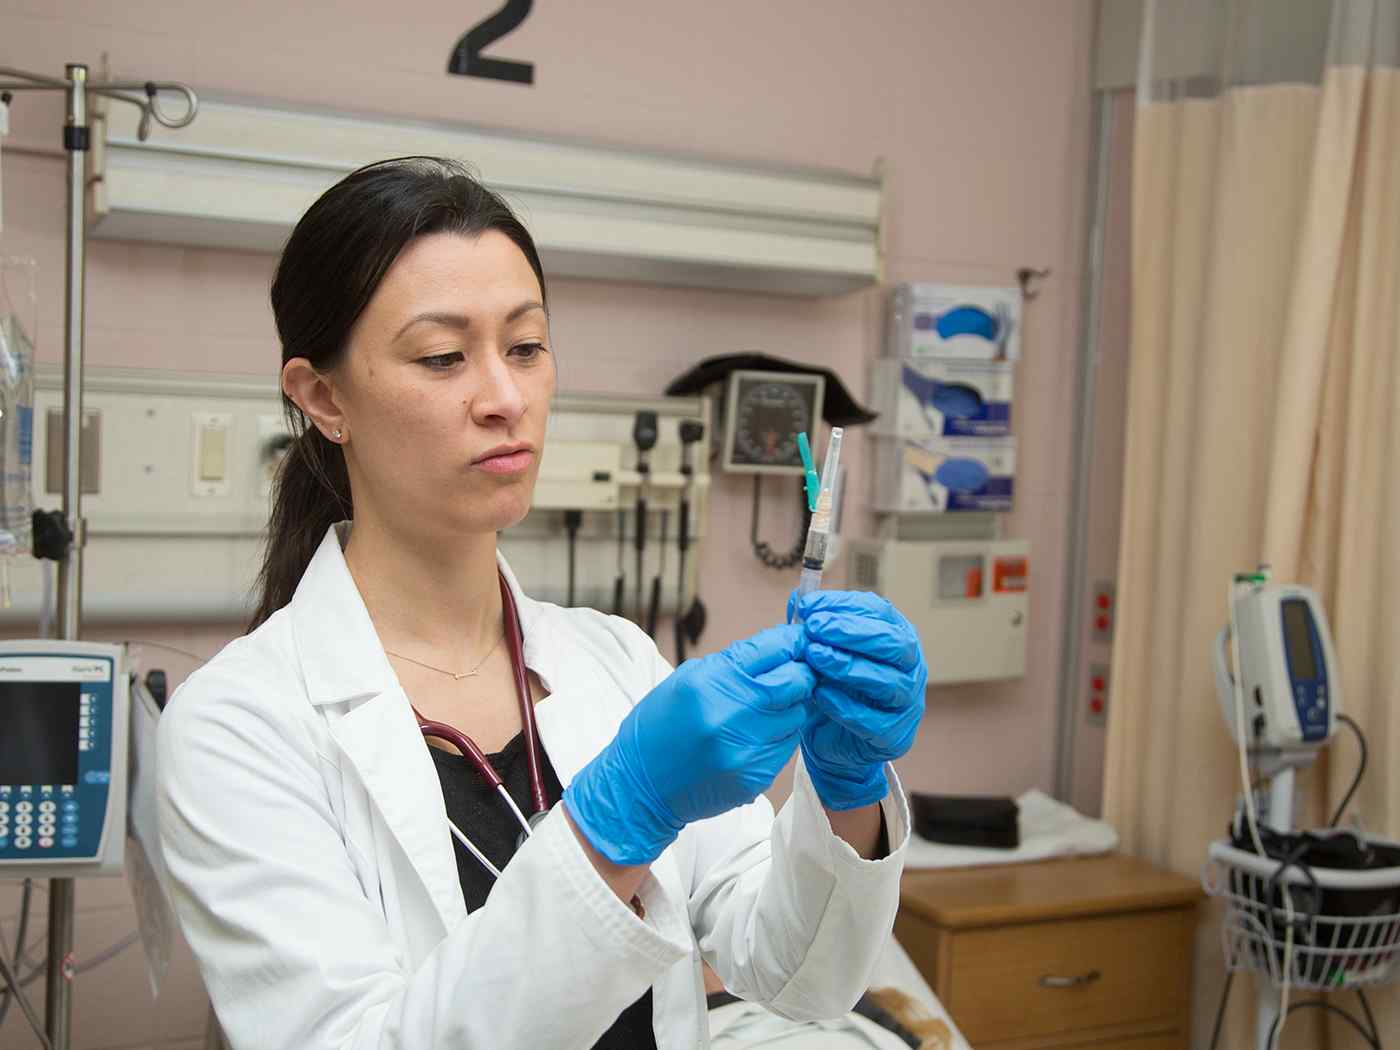 A nursing student preps a syringe